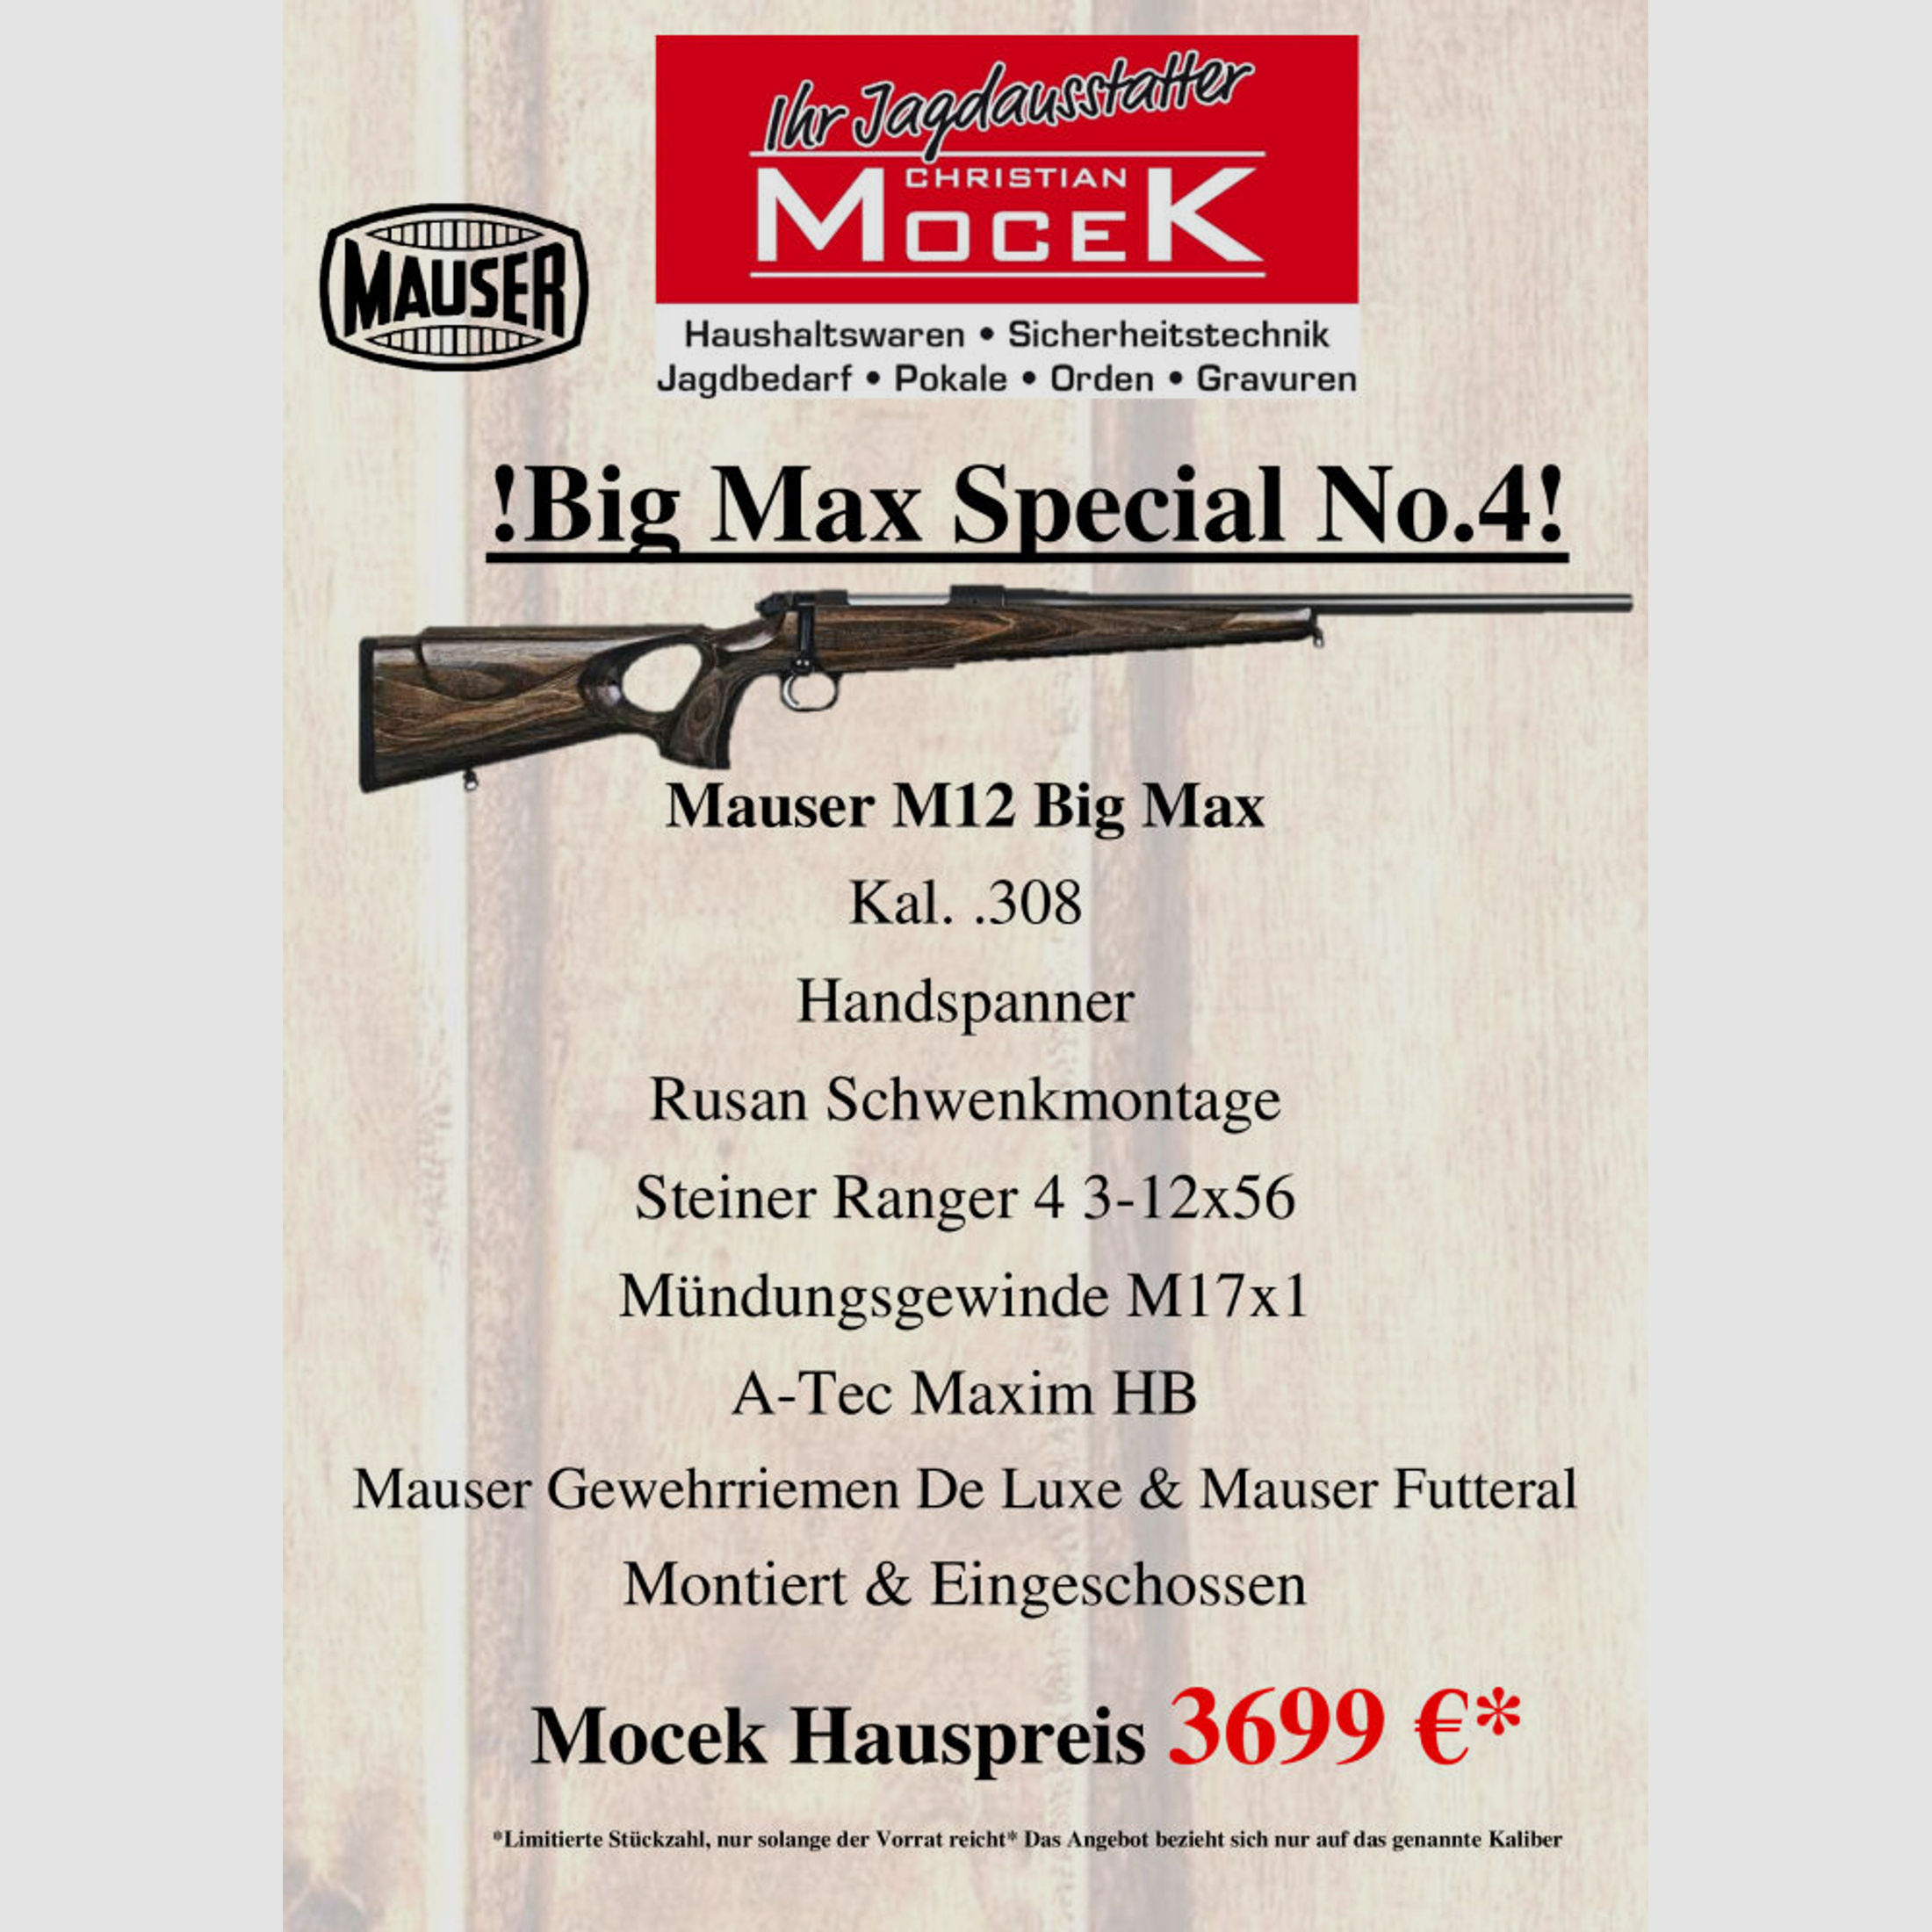 Mauser	 M12 Big Max, mit Steiner Ranger 4 3-12x56